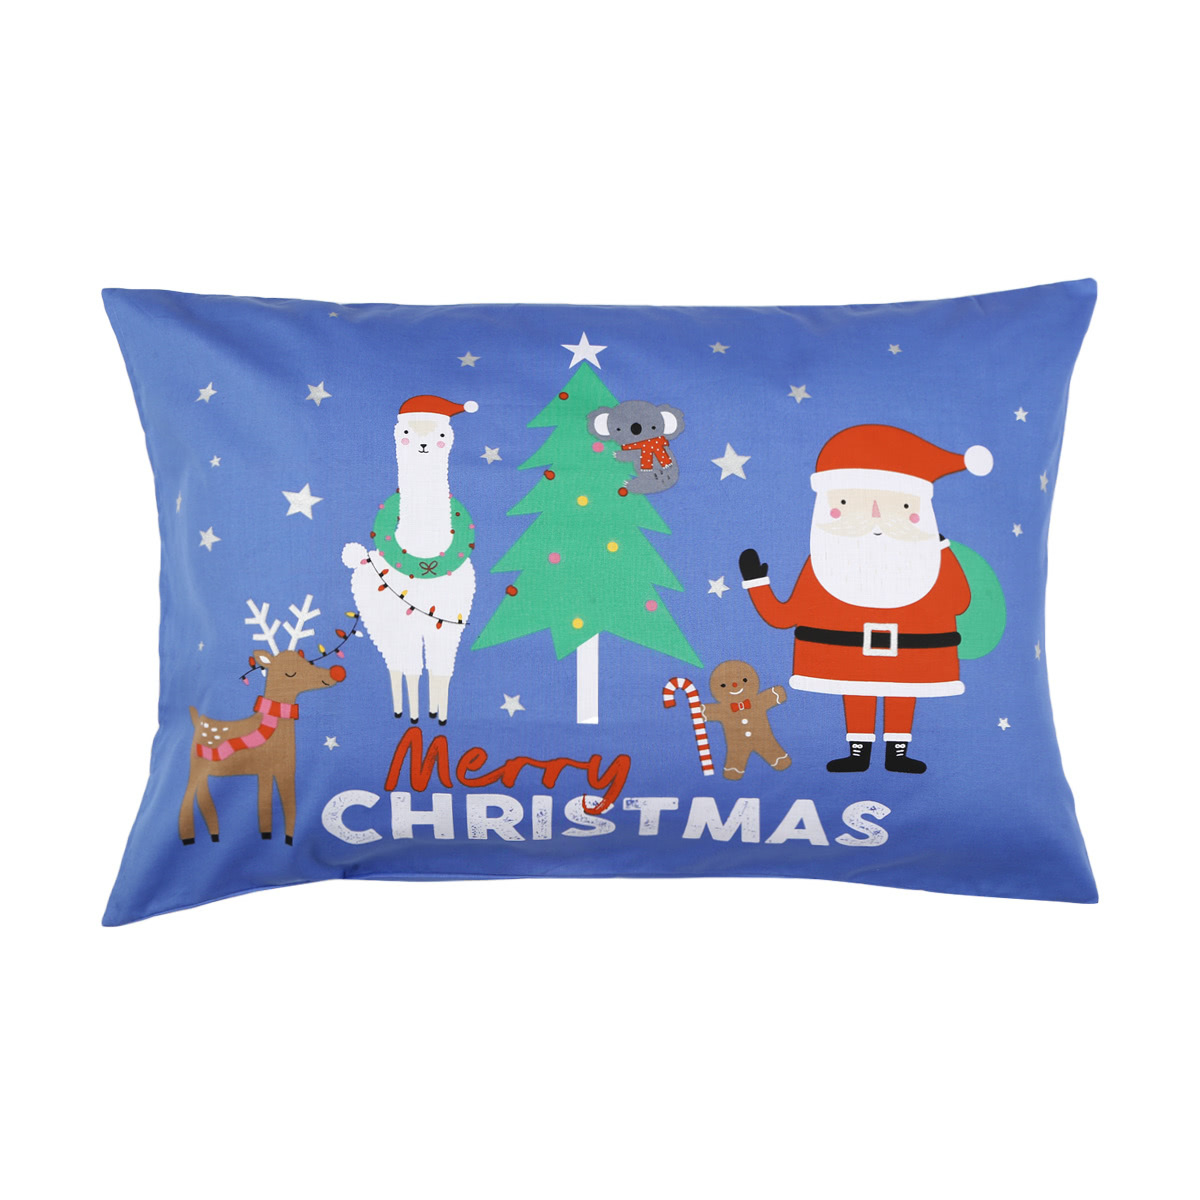 Santa & Friends Pillowcase